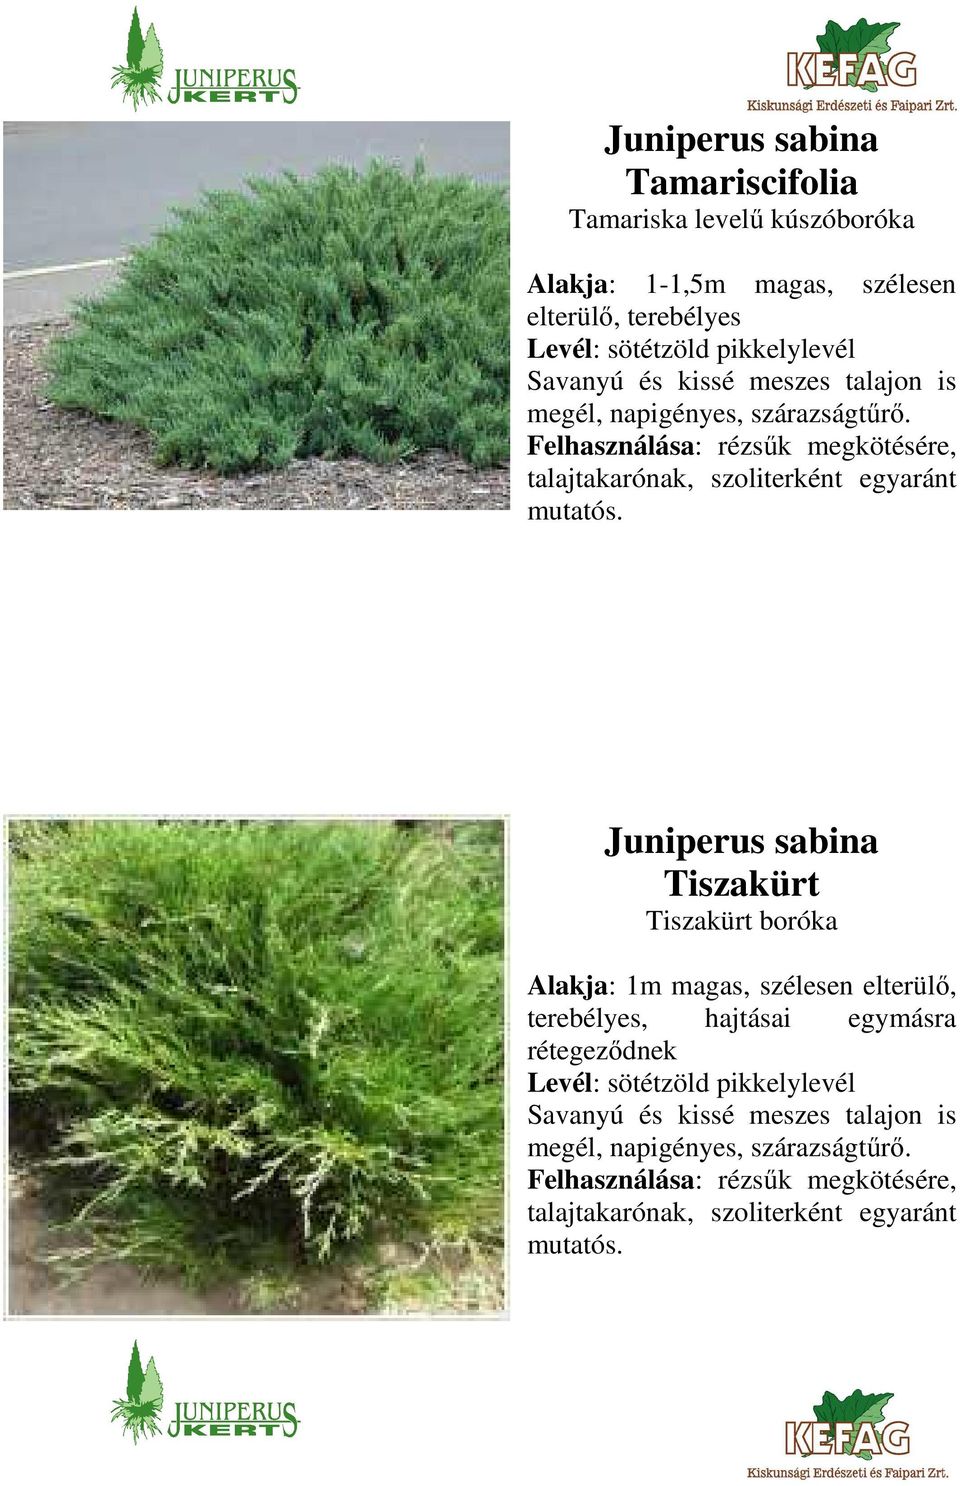 Juniperus sabina Tiszakürt Tiszakürt boróka Alakja: 1m magas, szélesen elterülő, terebélyes, hajtásai egymásra rétegeződnek Levél: sötétzöld